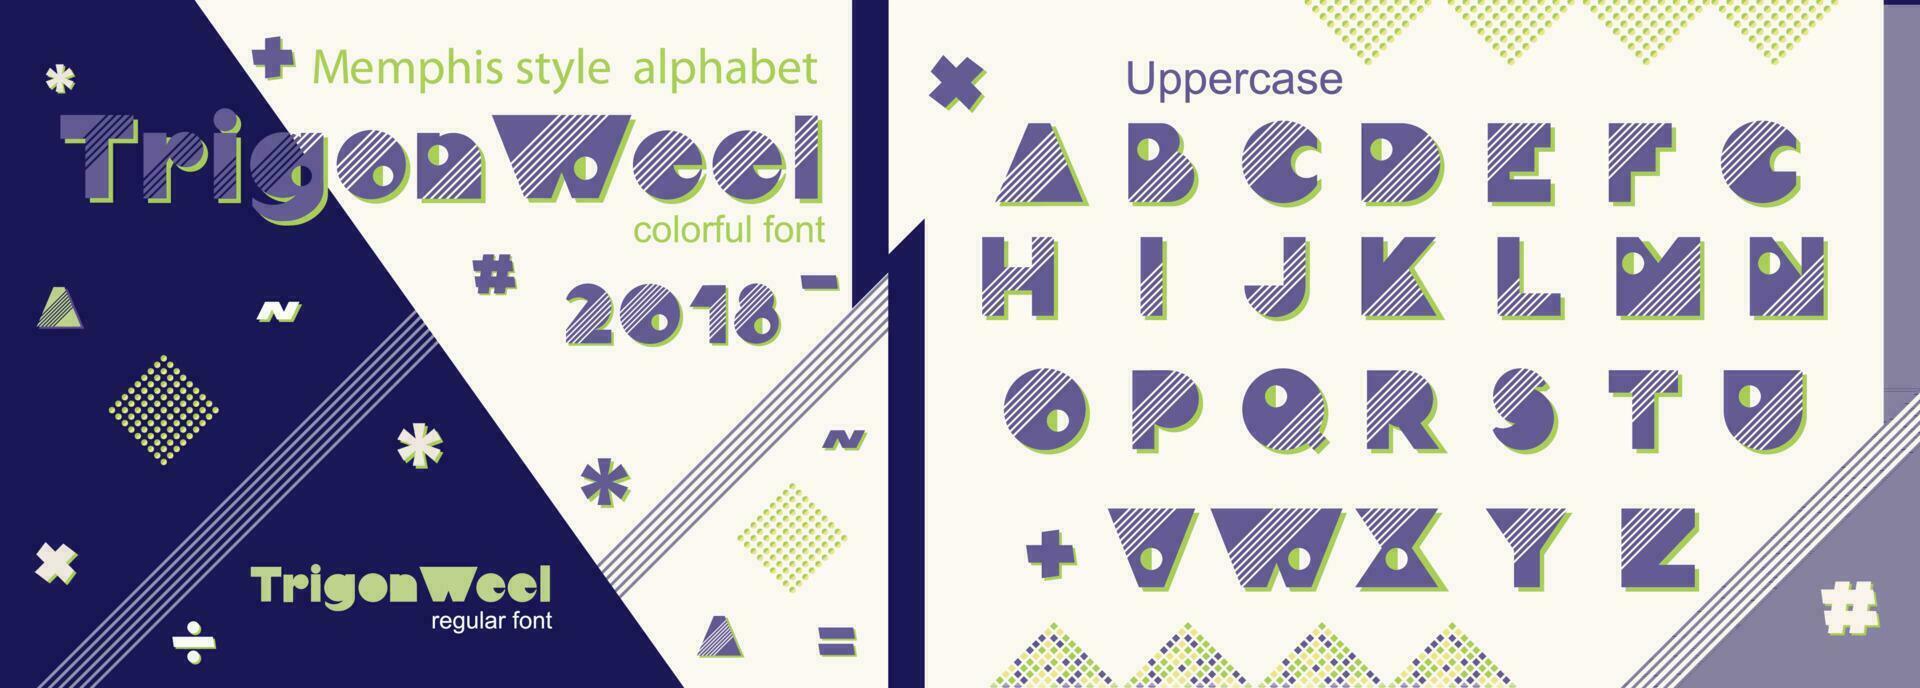 memphis estilo decorativo alfabeto, tipo de letra popular Arte fuente para eslogan gráfico imprimir, hipster moda, geométrico patrón, Clásico póster vector